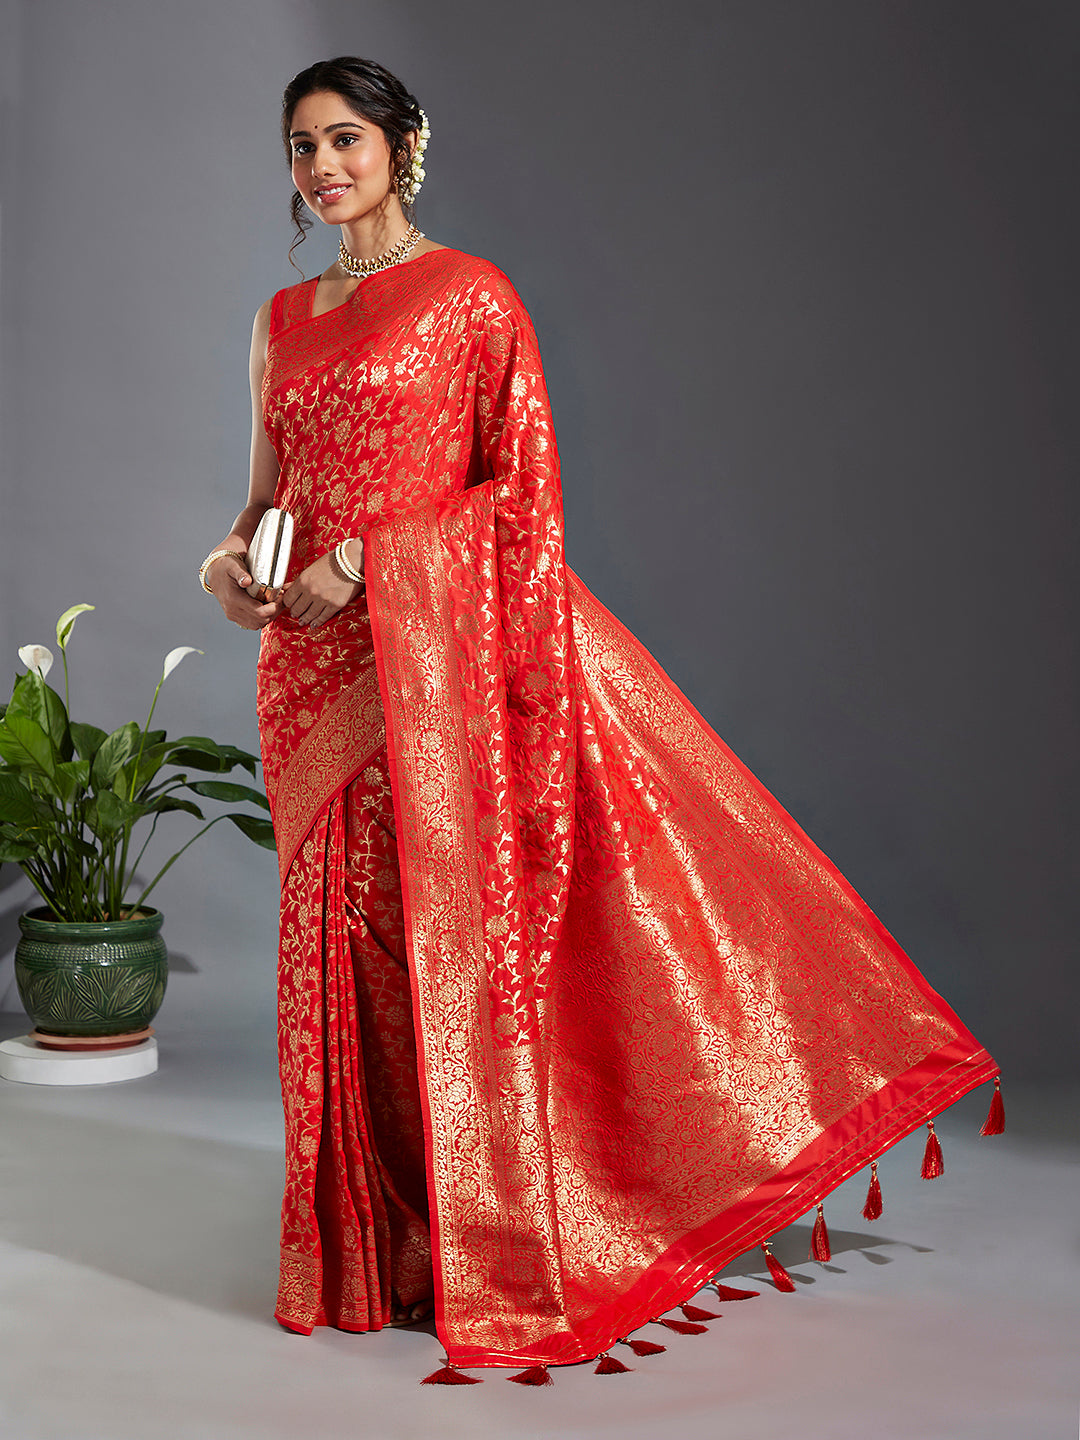 Women's Red & Gold Satin Paisley Zari With Beautiful Jaal Banarasi Saree - Royal Dwells